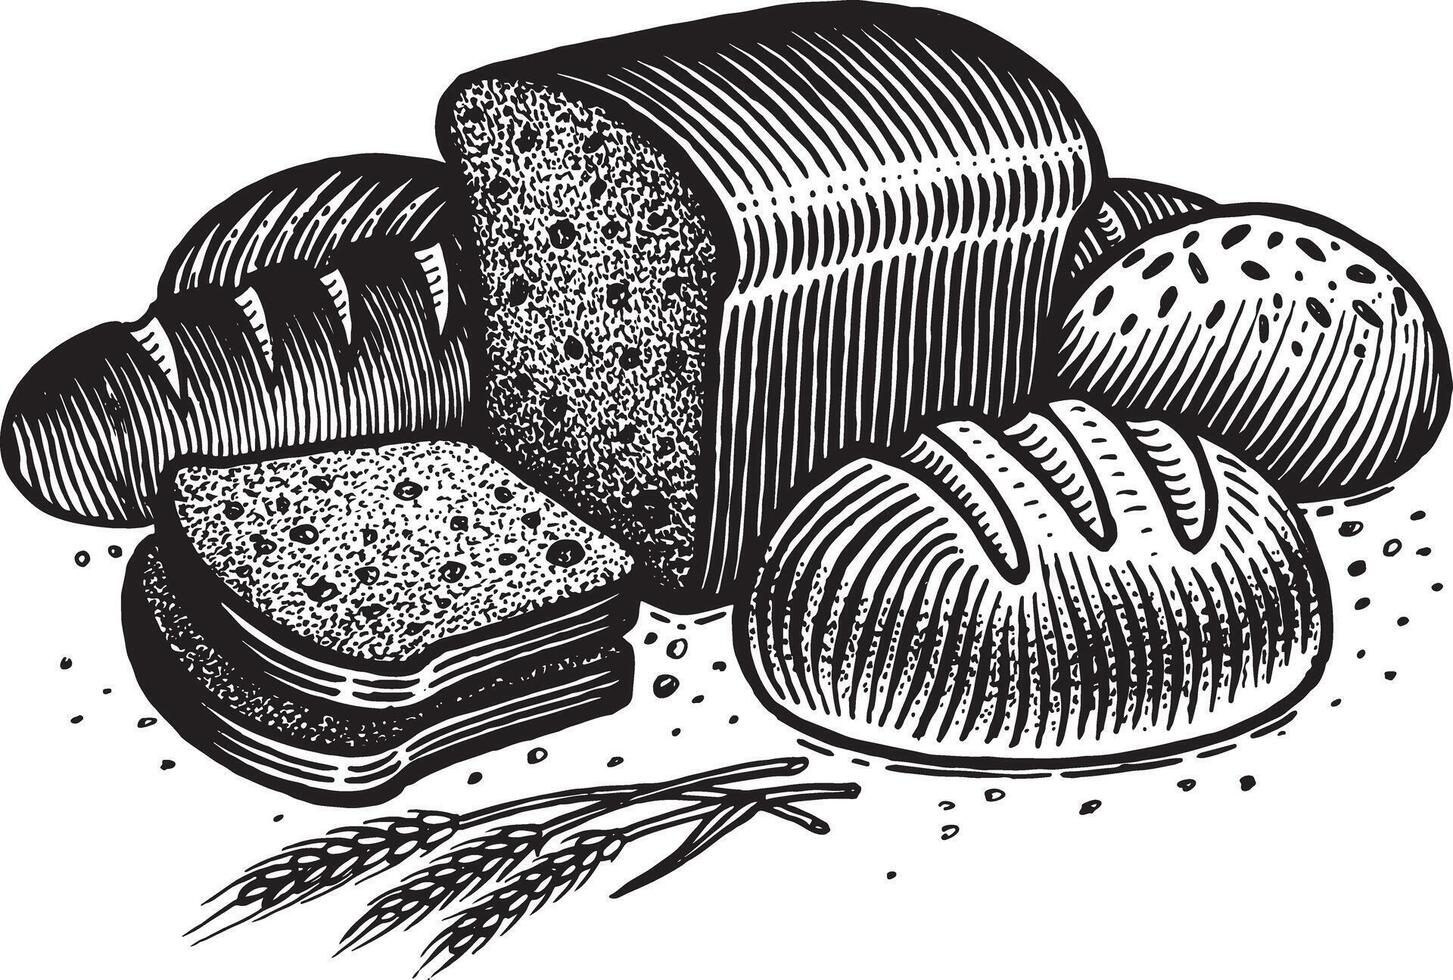 brood, illustratie. wijnoogst grafiek en handwerk. tekening met een inkt pen en potlood. de rogge brood, gesneden, brood, aartjes en granen, ronde brood, besprenkeld met meel en zemelen vector